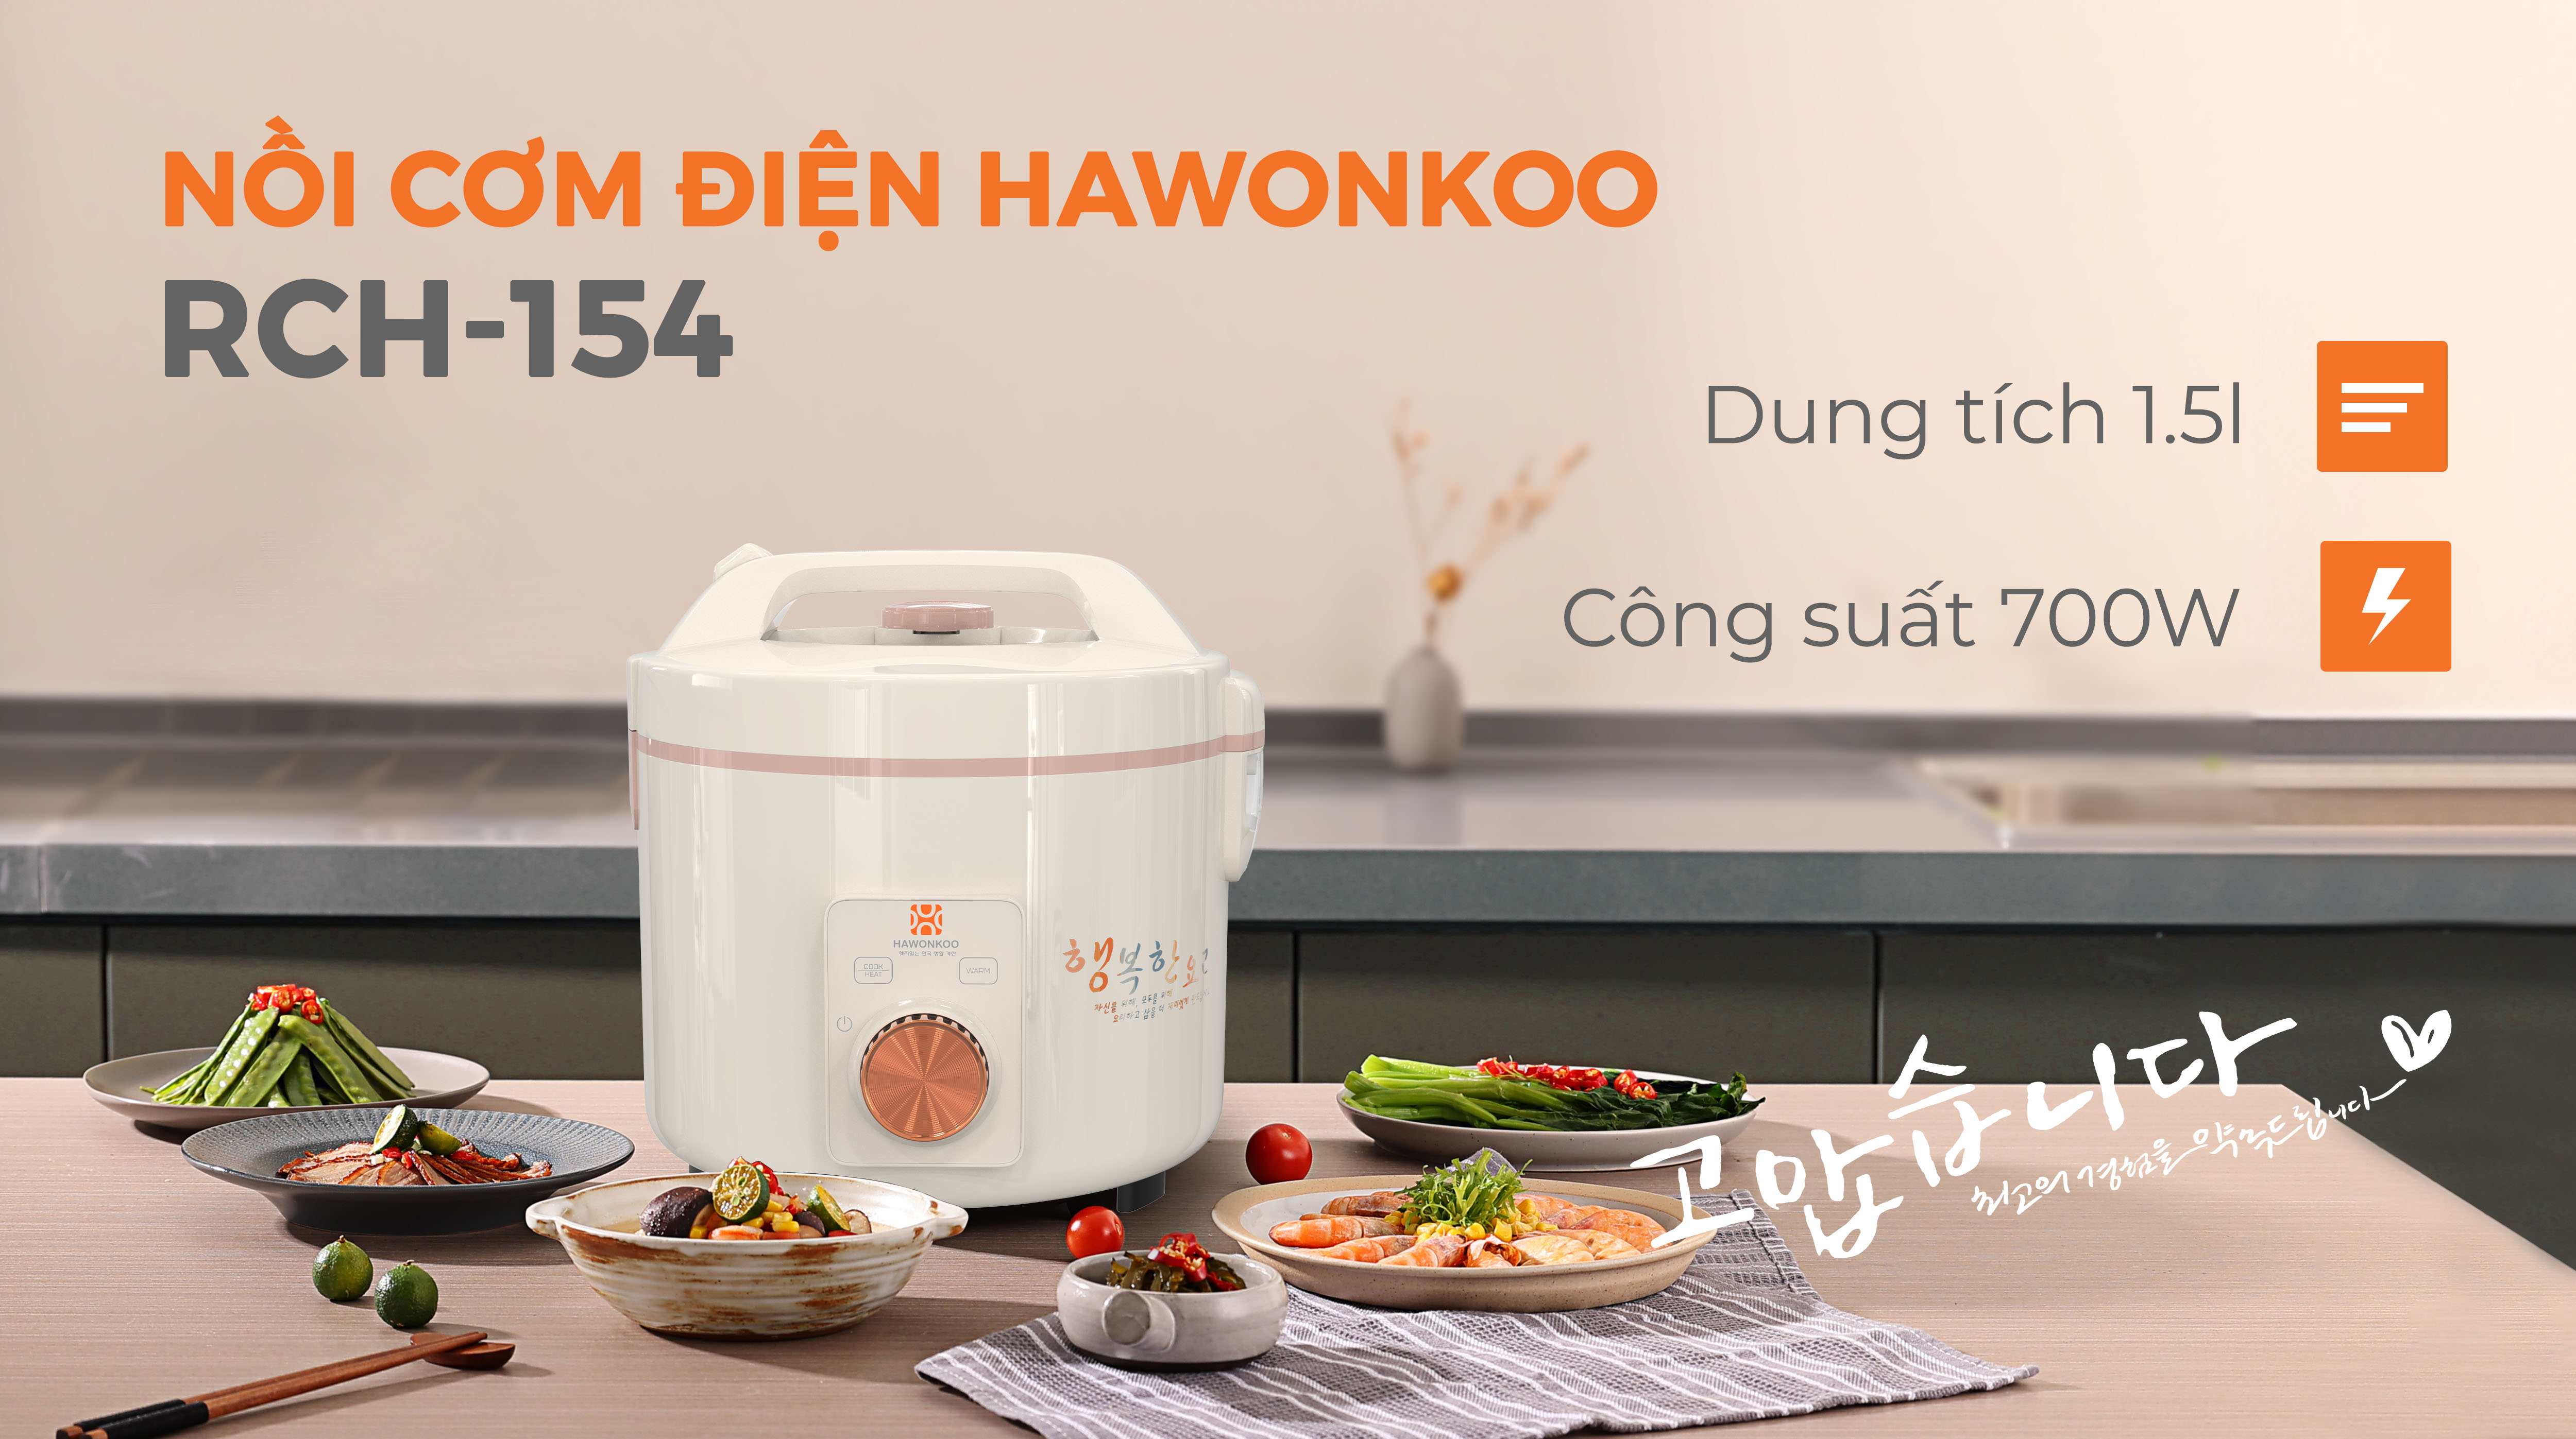 Noi-com-dien-Hawonkoo-1-5-lit-RCH-154-CE